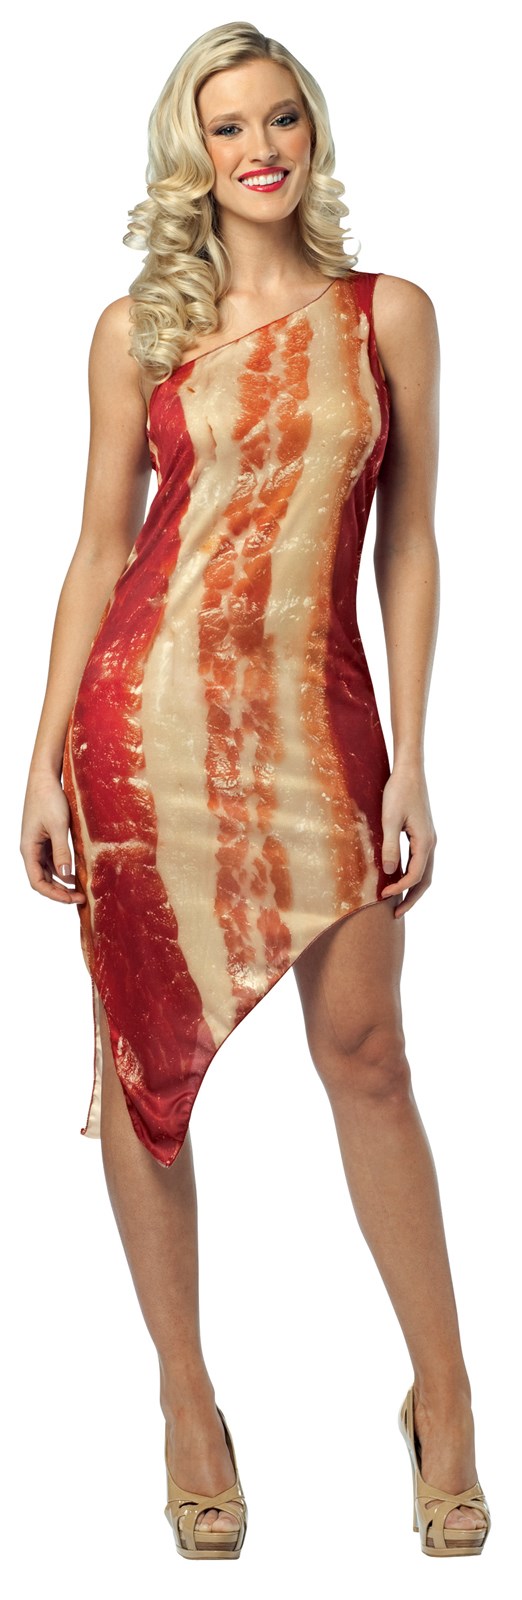 Bilderesultat for bacon